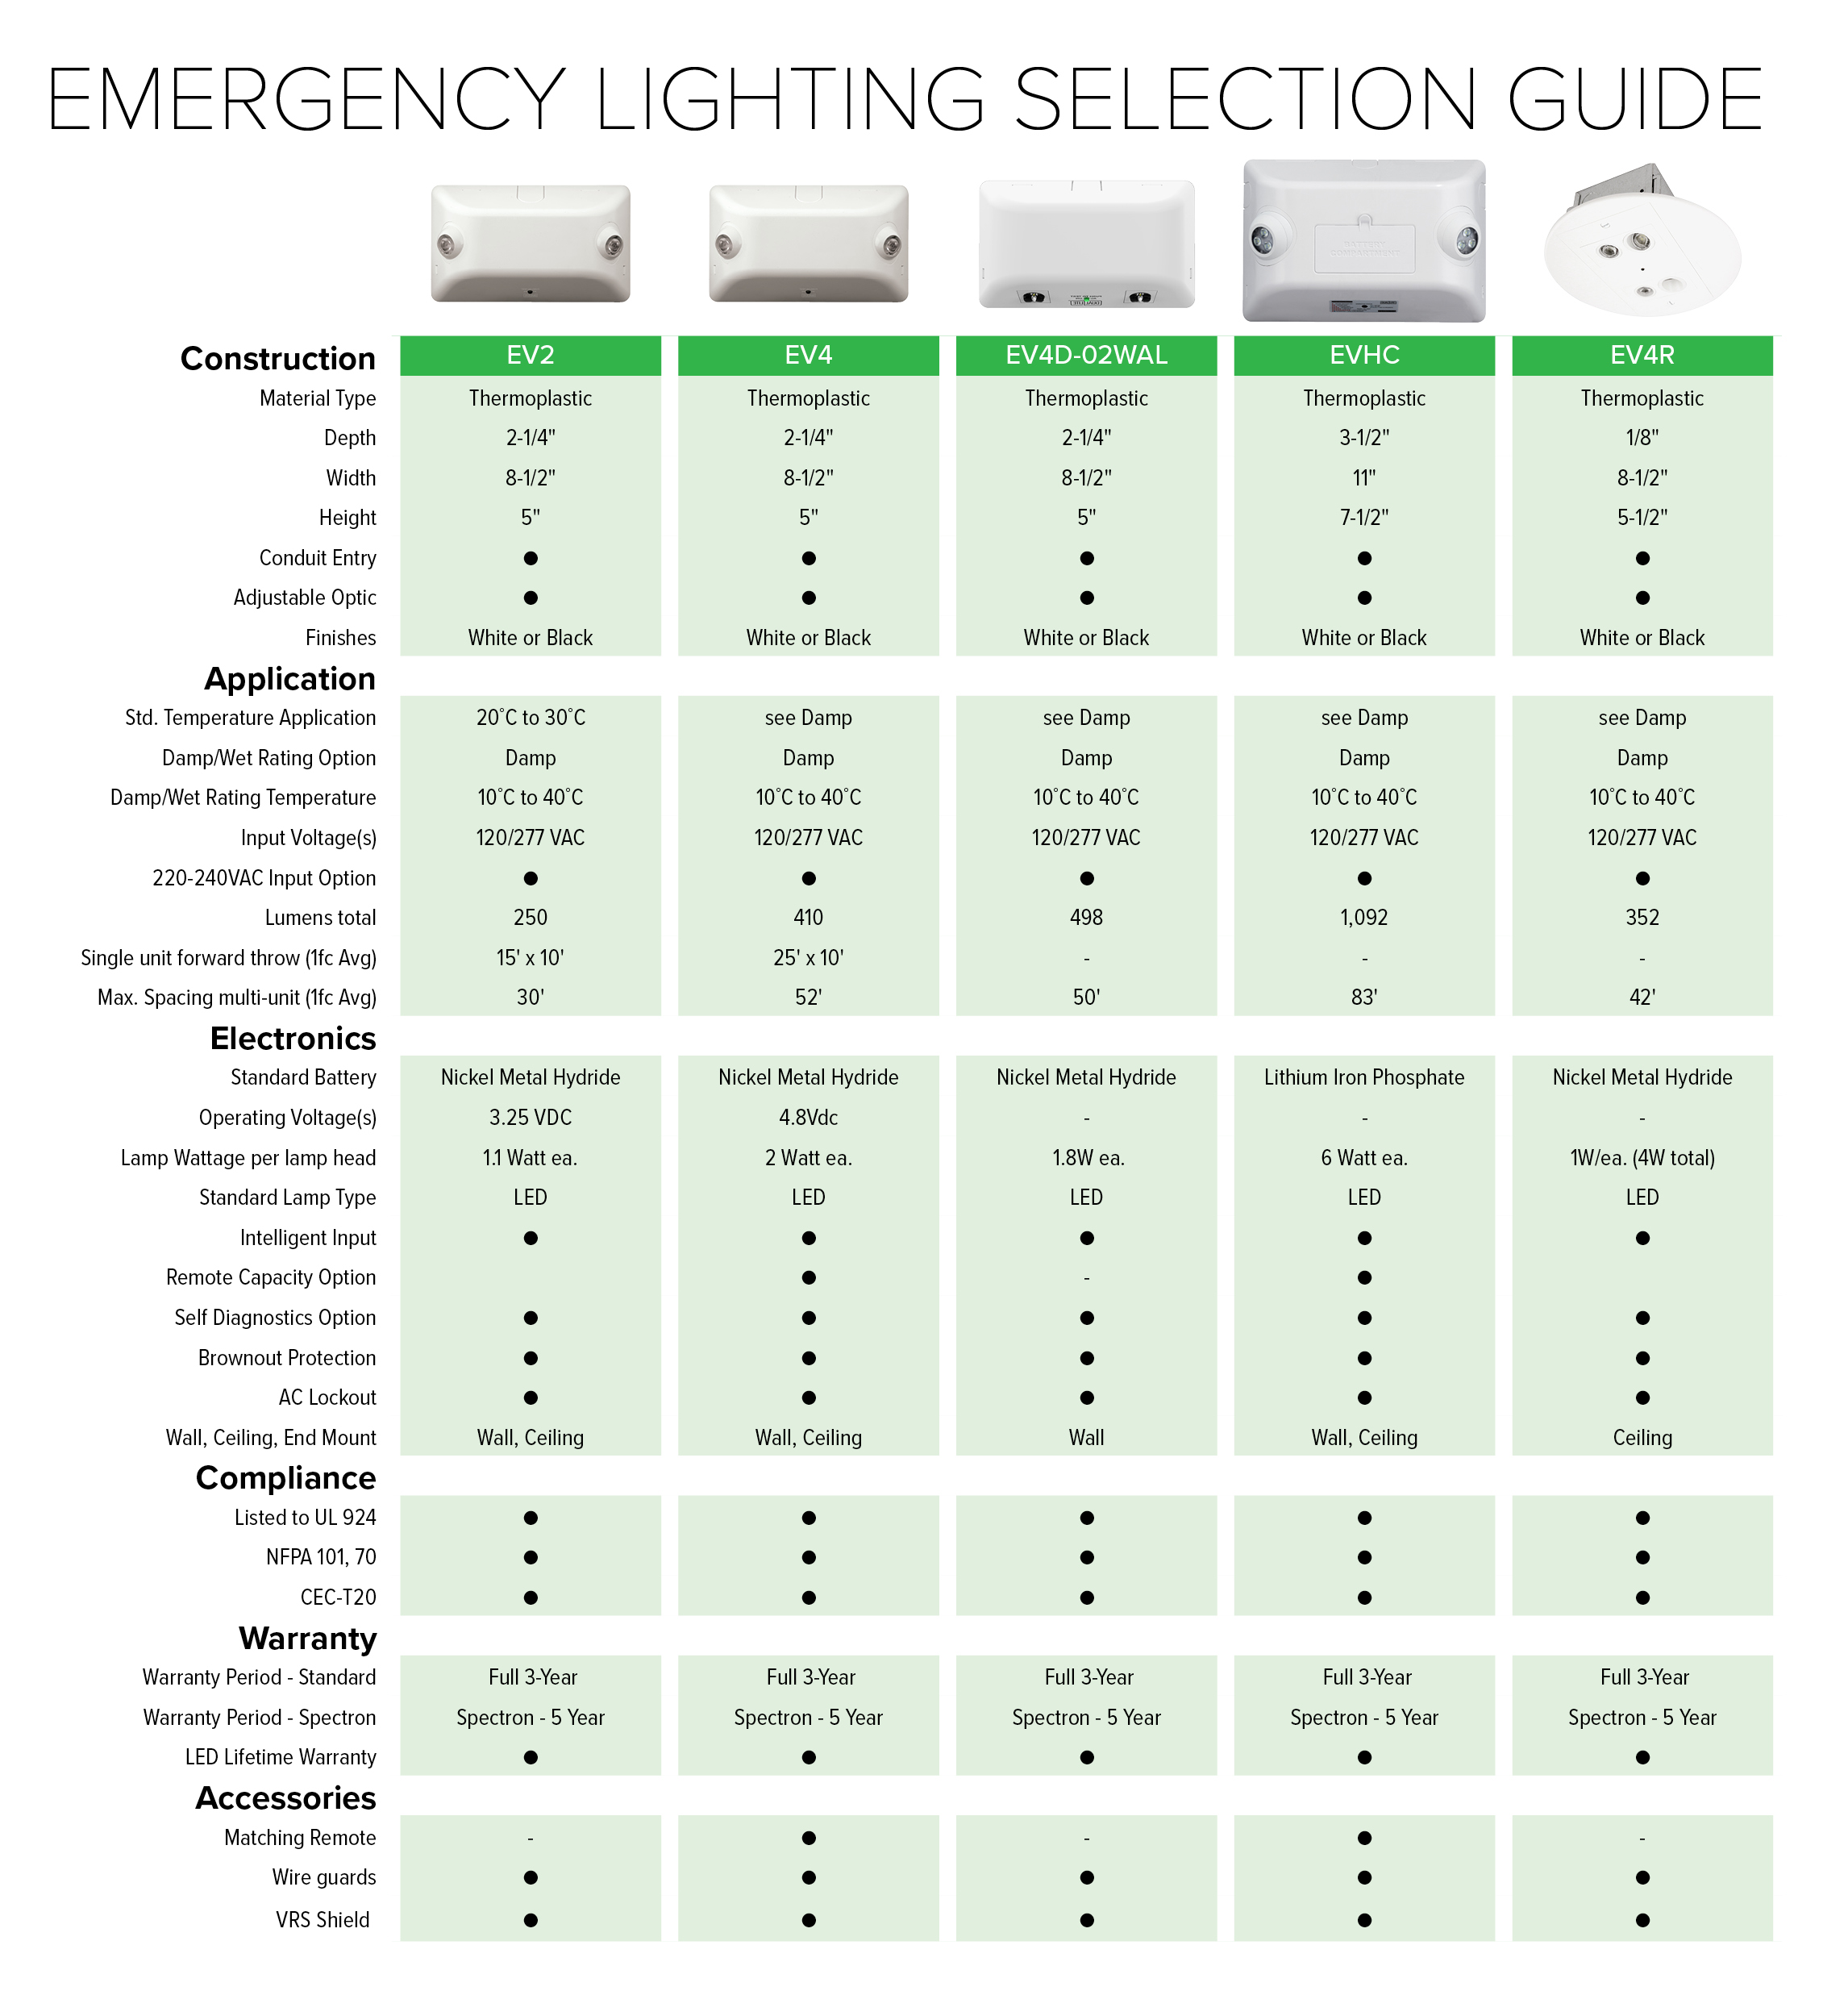 EV Family Emergency Light Selection Guide